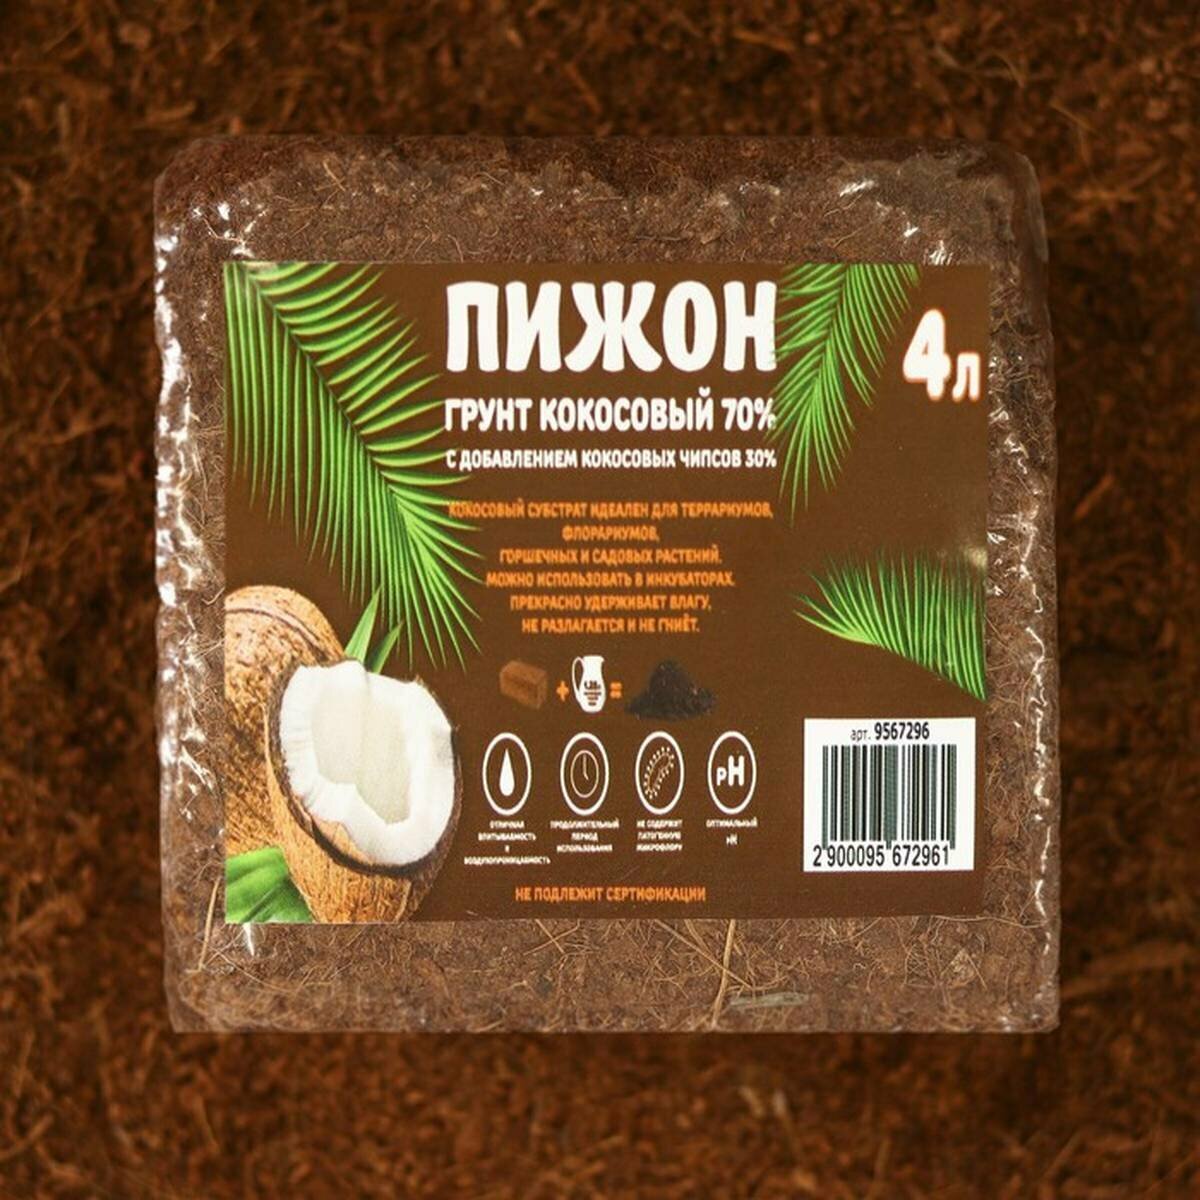 Грунт Пижон - кокосовый, питательный, в брикете, 70% торфа и 30% чипсов, на 4 л грунта, 350 г, 1 шт.